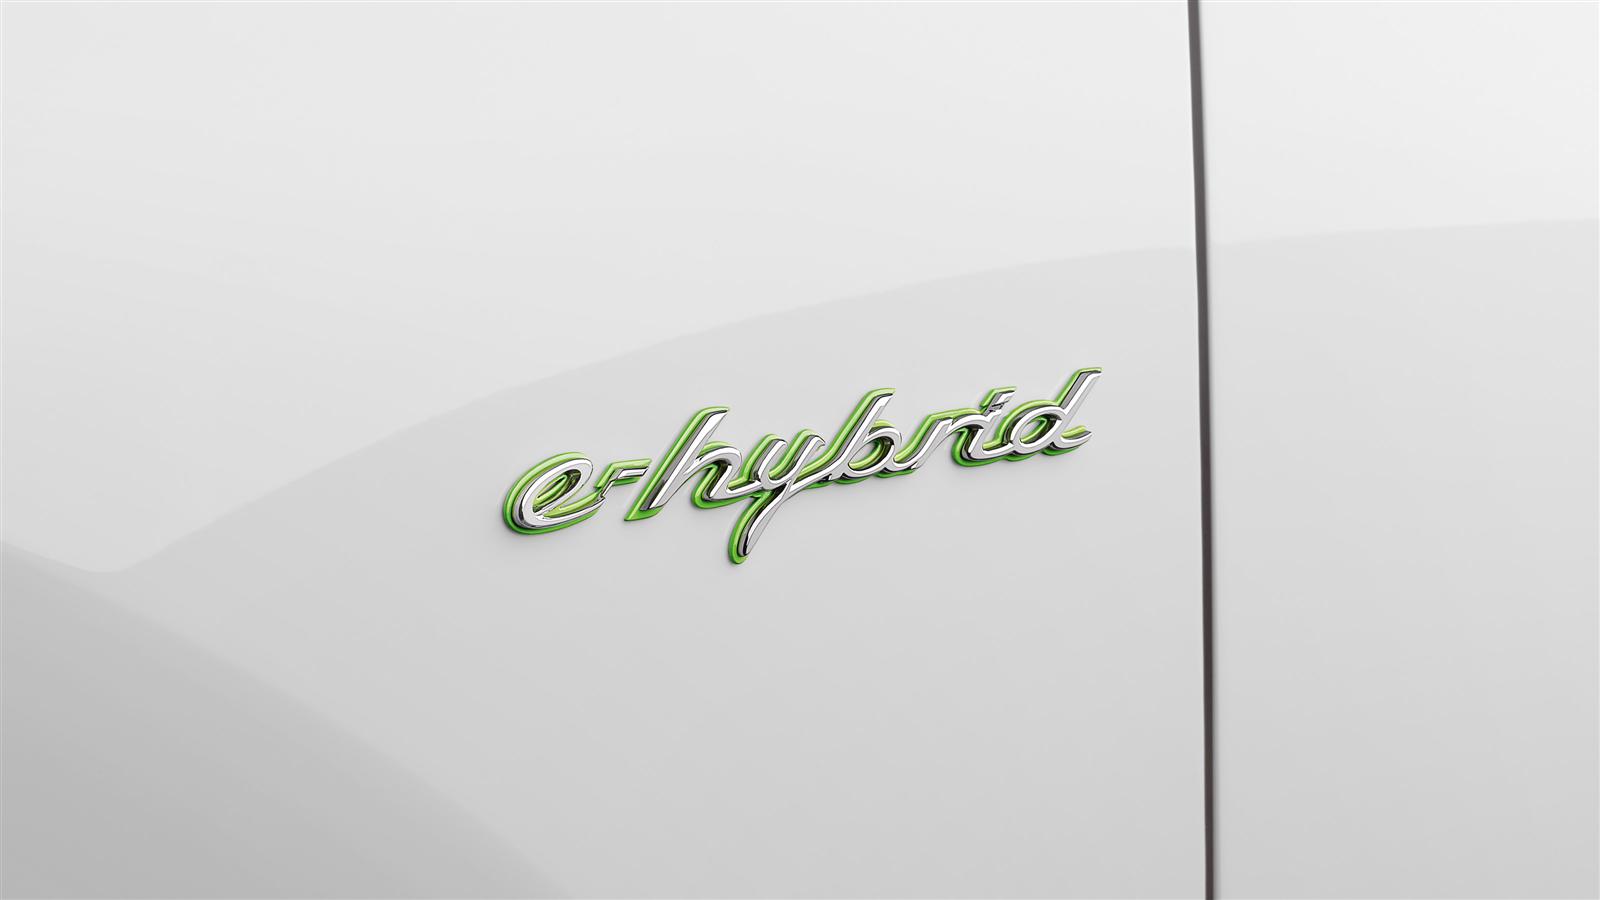   Cayenne E-Hybrid